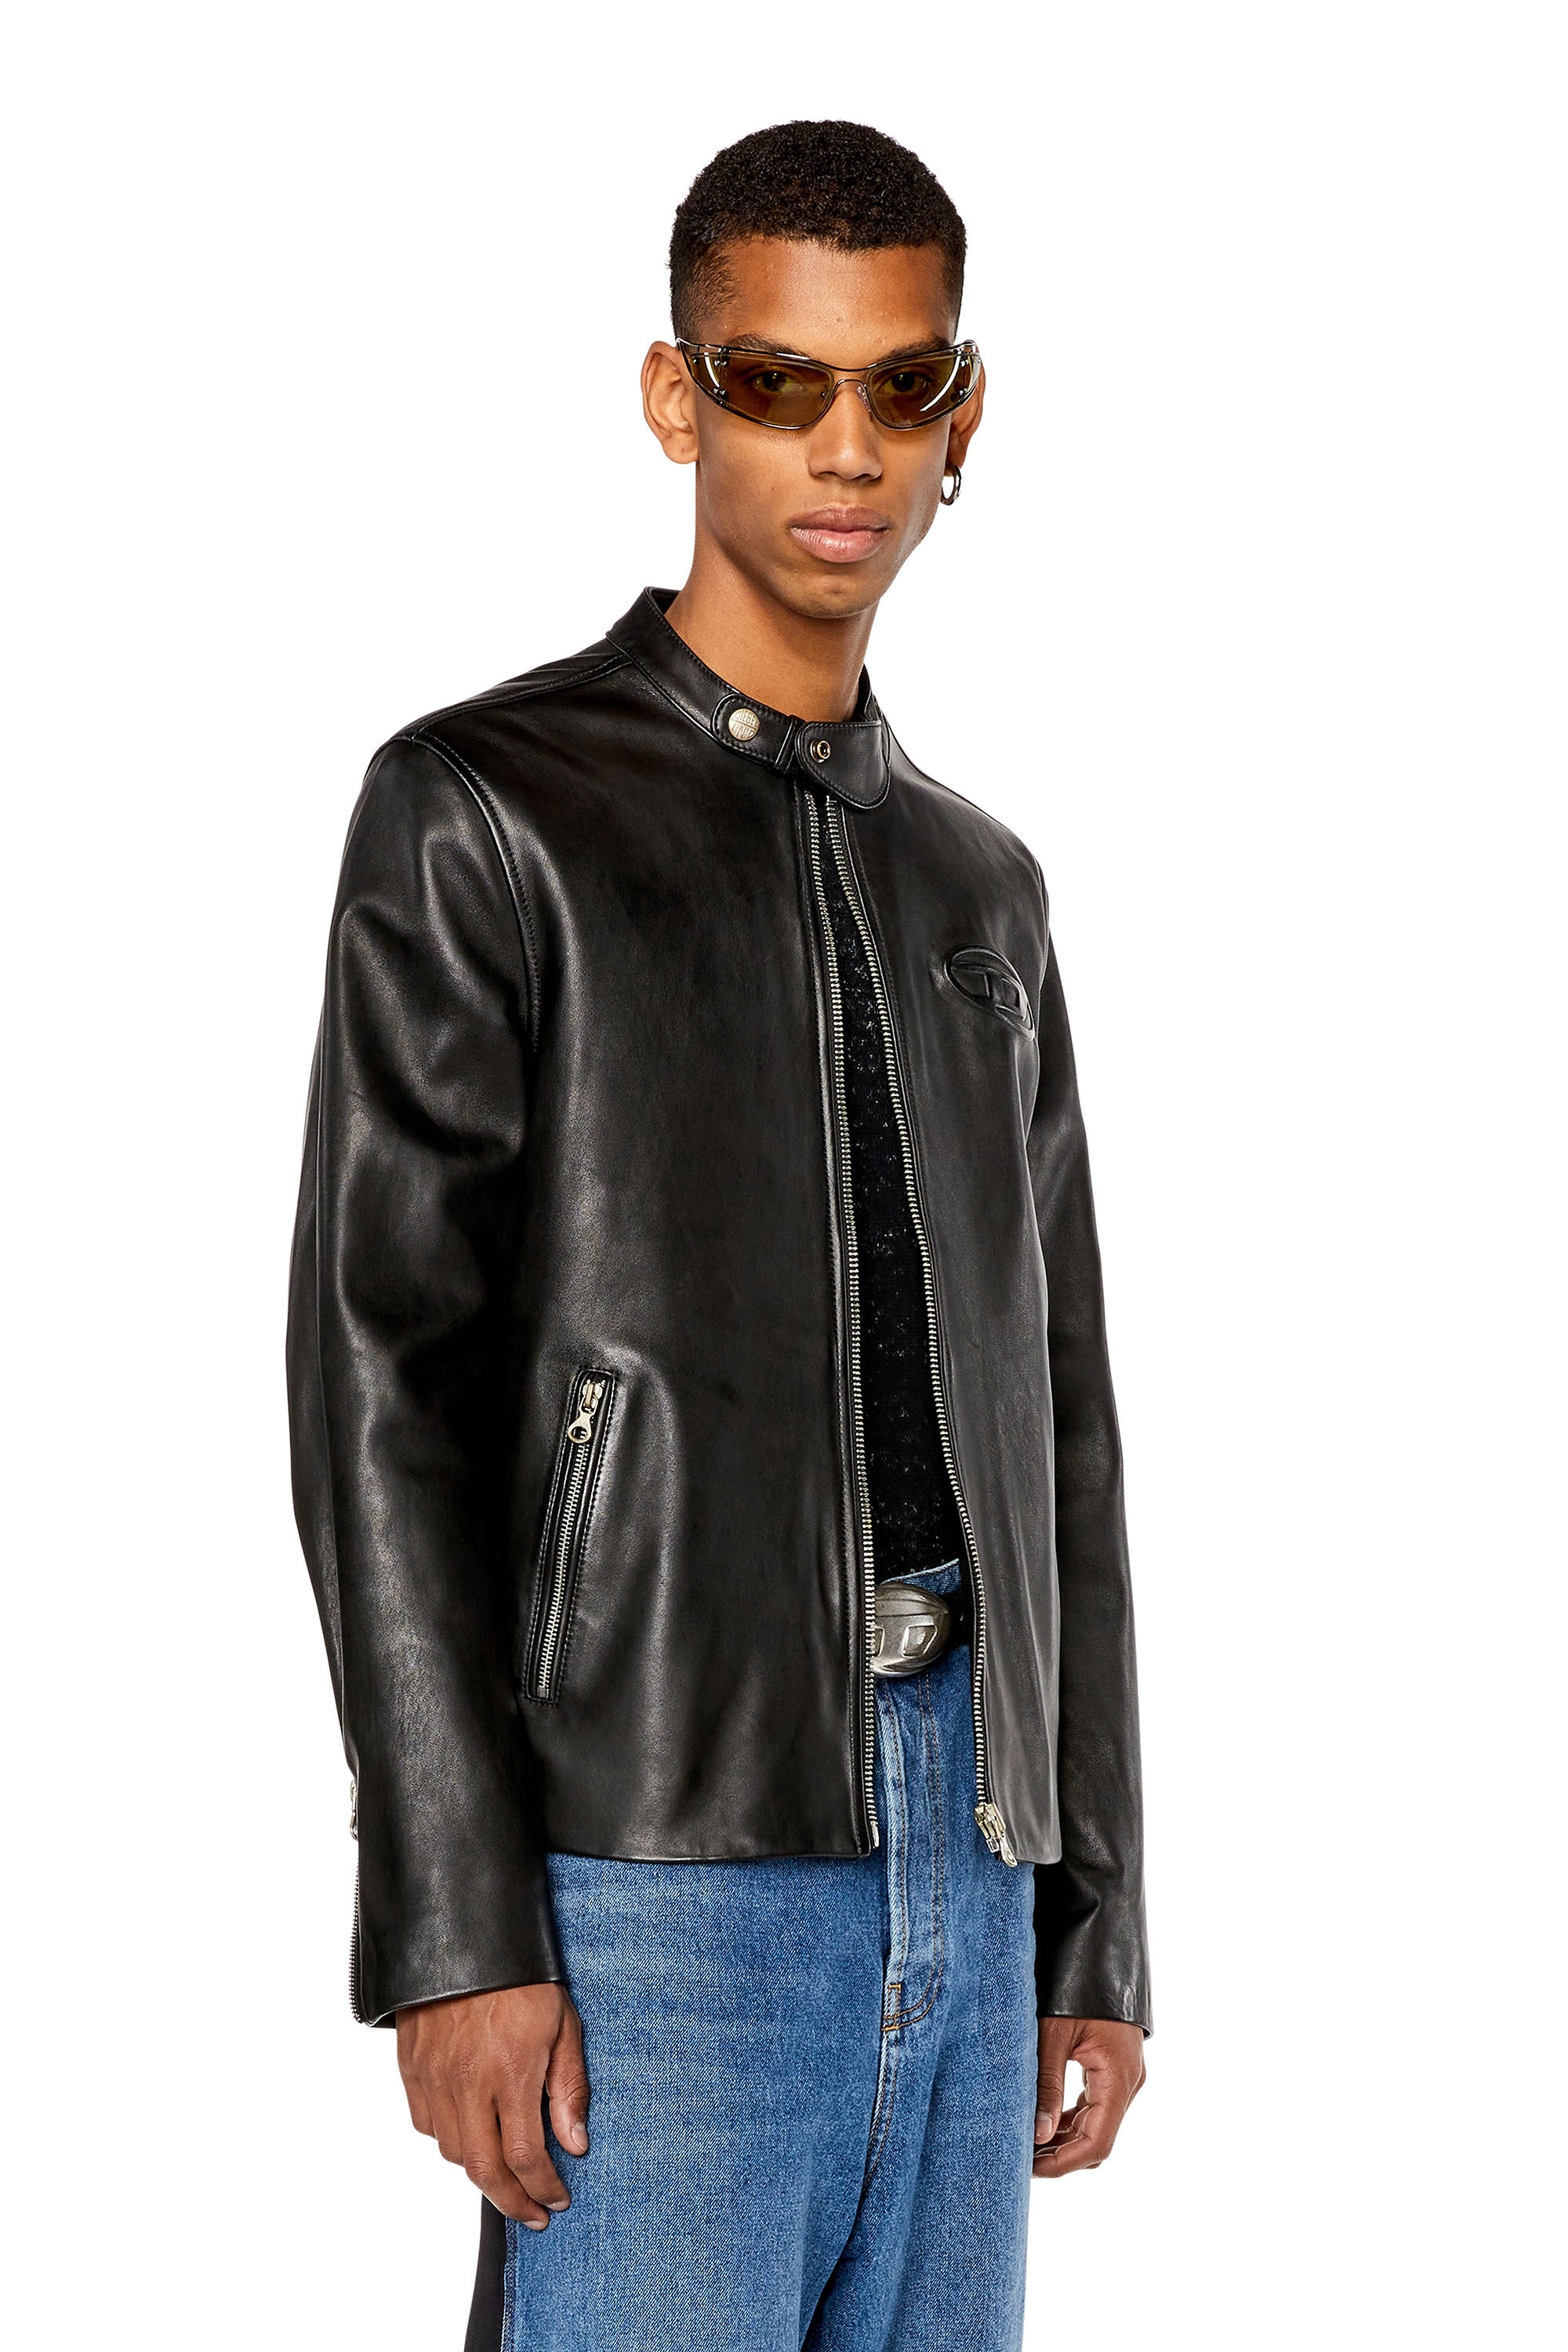 Men's Genuine Leather Jackets: Buy in UK - Happy Gentleman